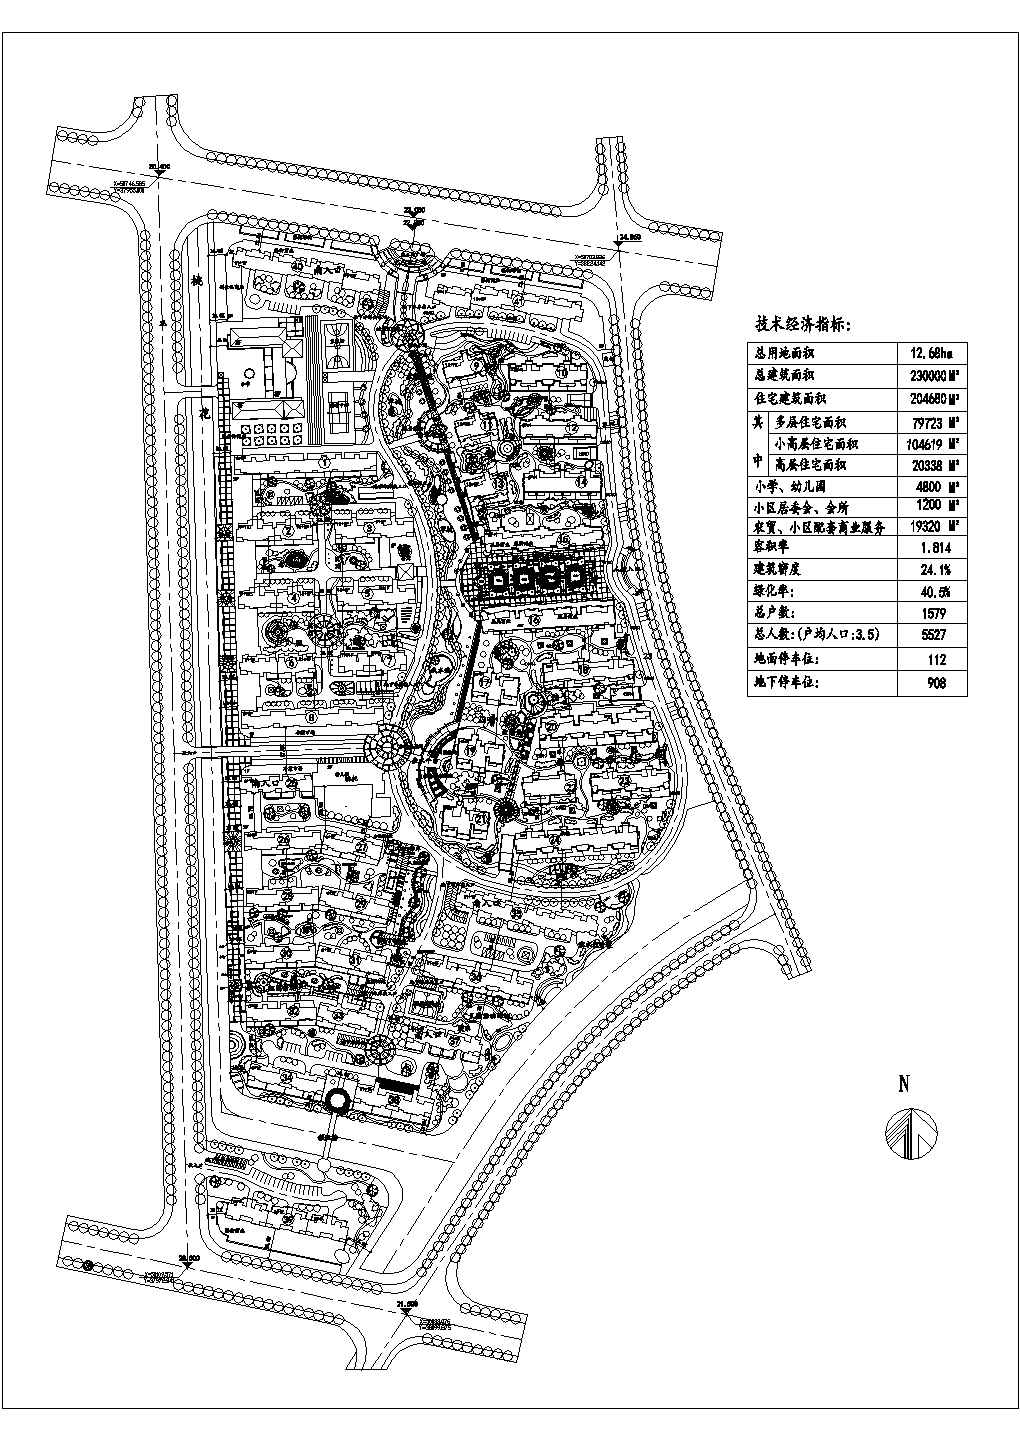 某江苏省市中心高档小区设计详图